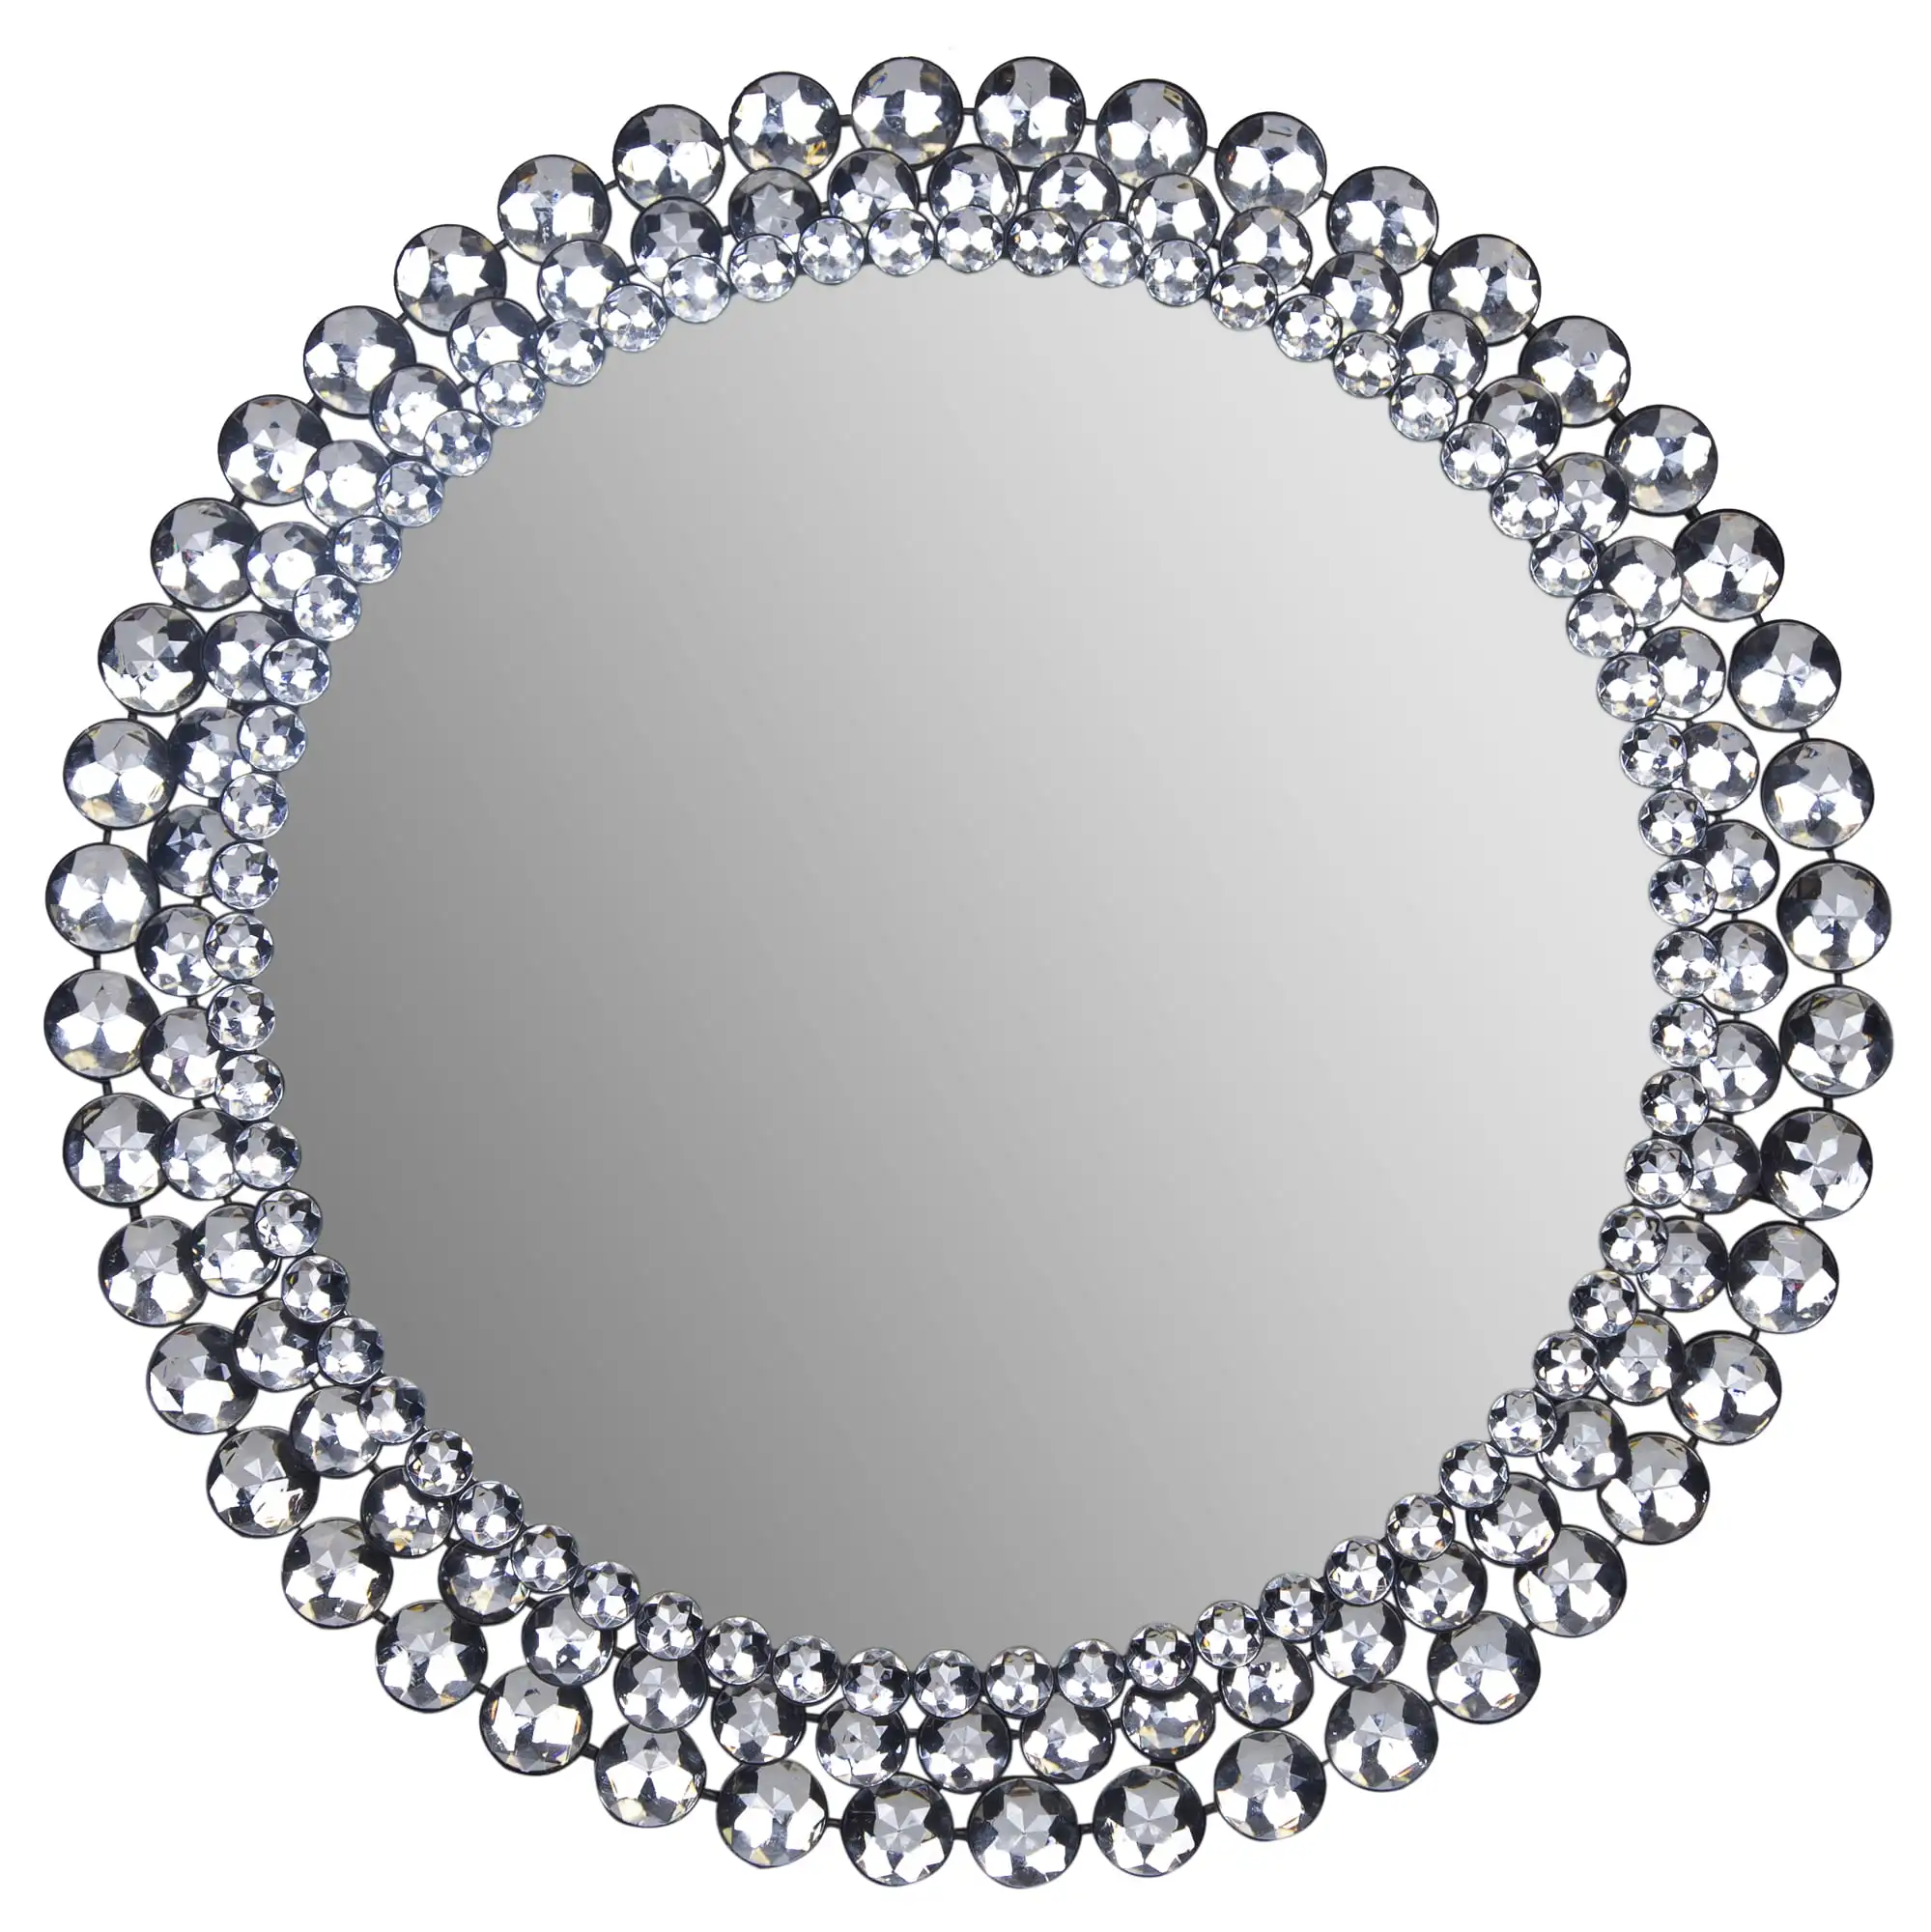 

Круглое настенное зеркало с серебряными драгоценными камнями, 24 дюйма